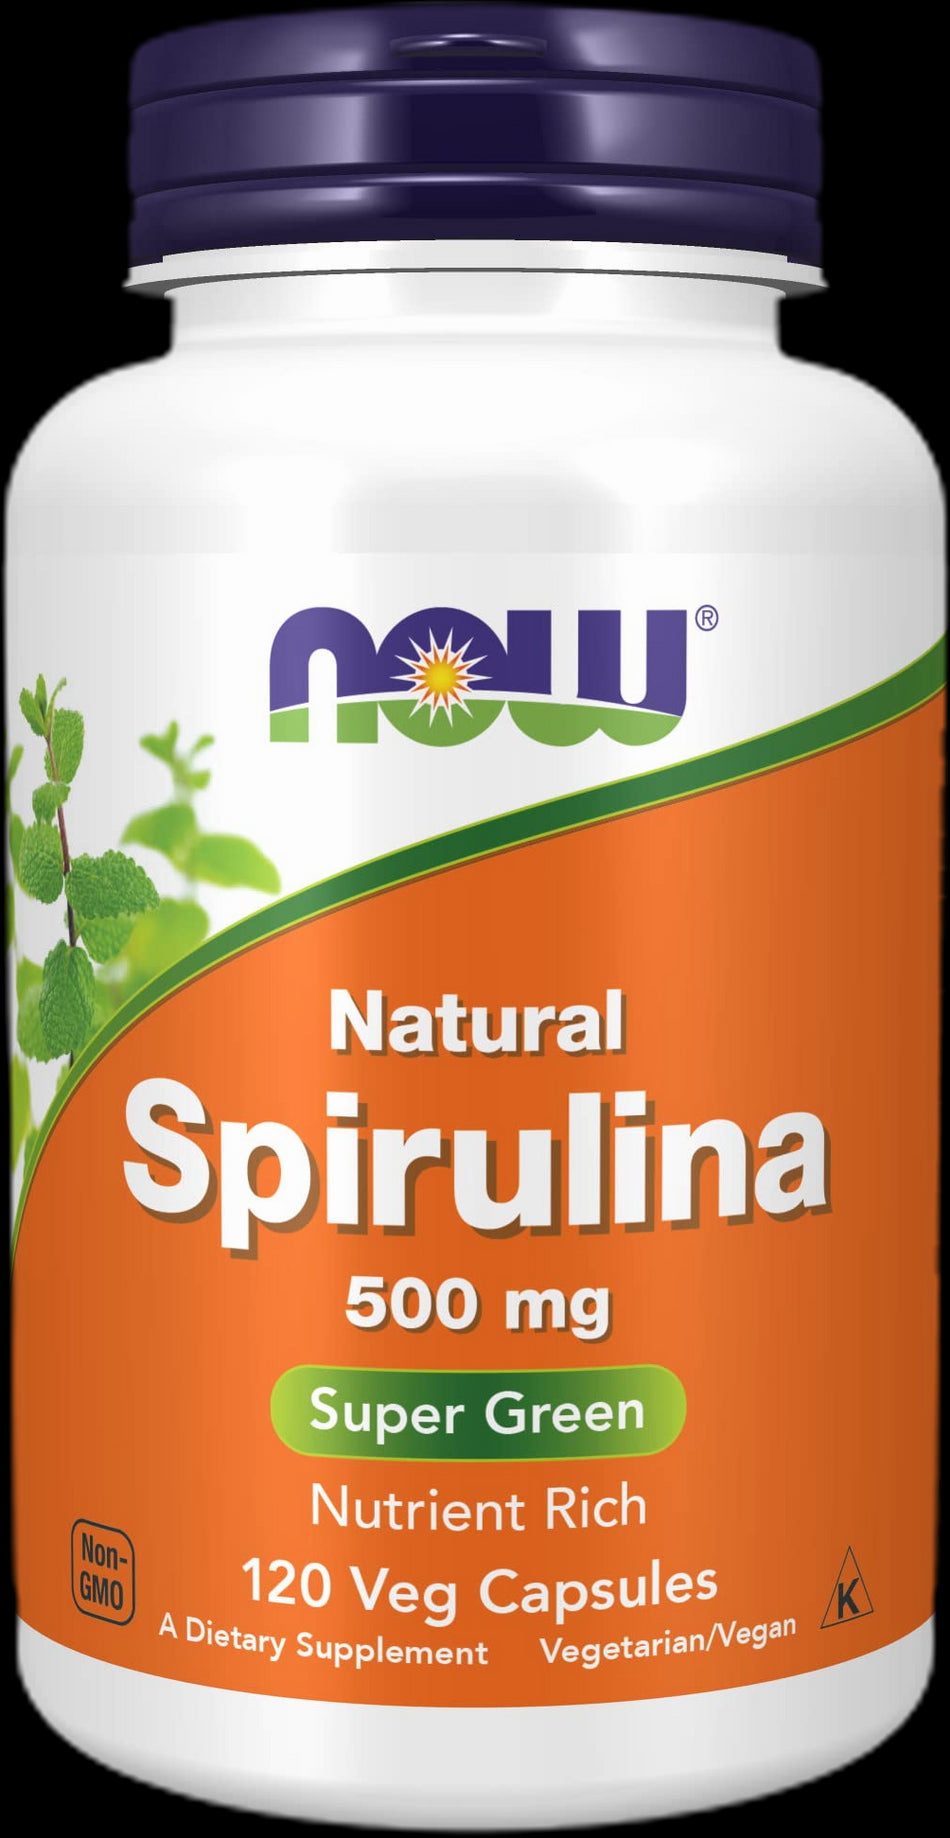 Natural Spirulina 500 mg - BadiZdrav.BG